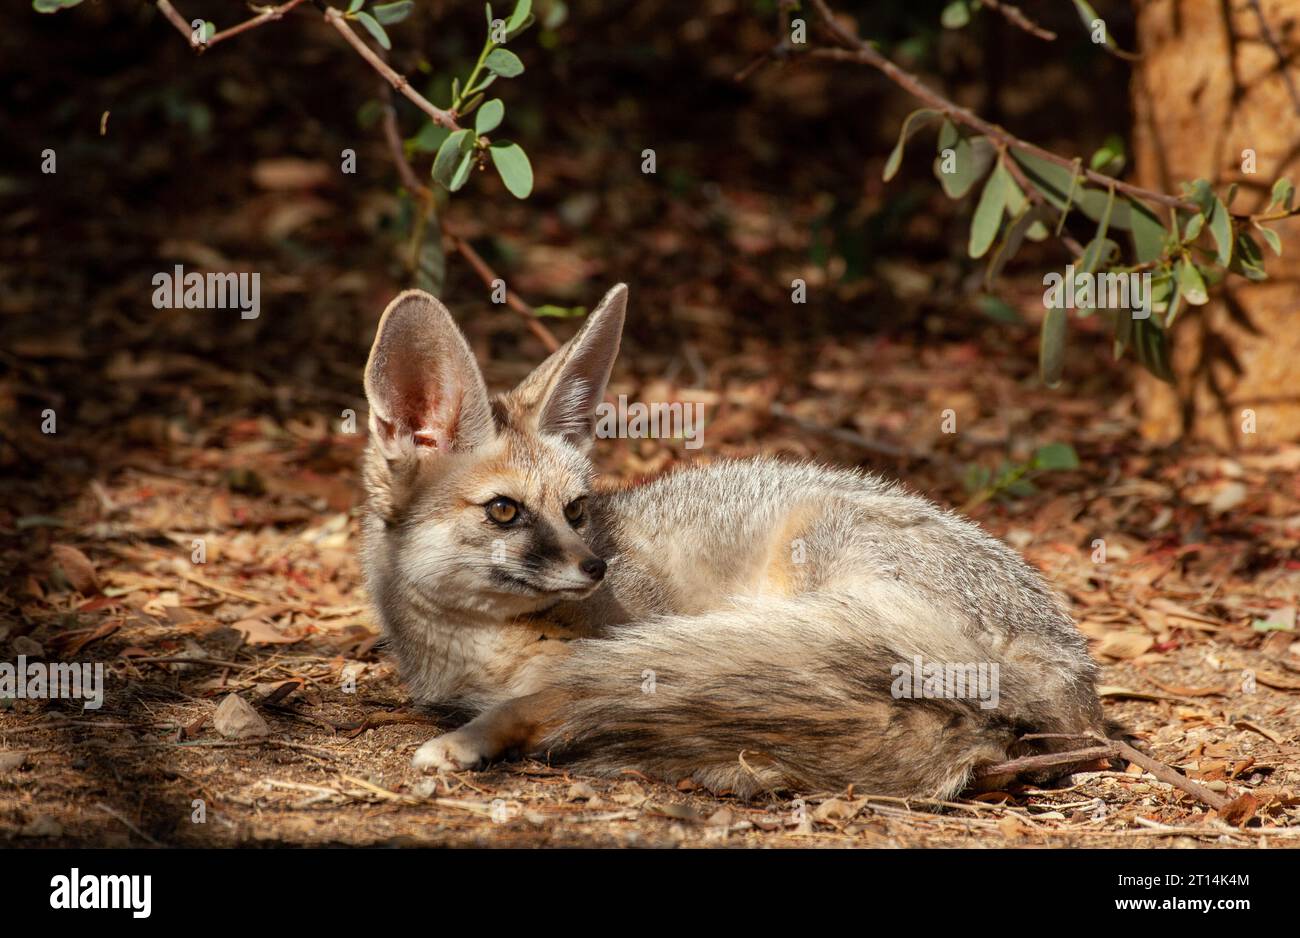 Blanford's Fox (Vulpes cana) ثعلب أفغاني est un petit renard trouvé dans certaines régions du Moyen-Orient.photographié en Israël Banque D'Images